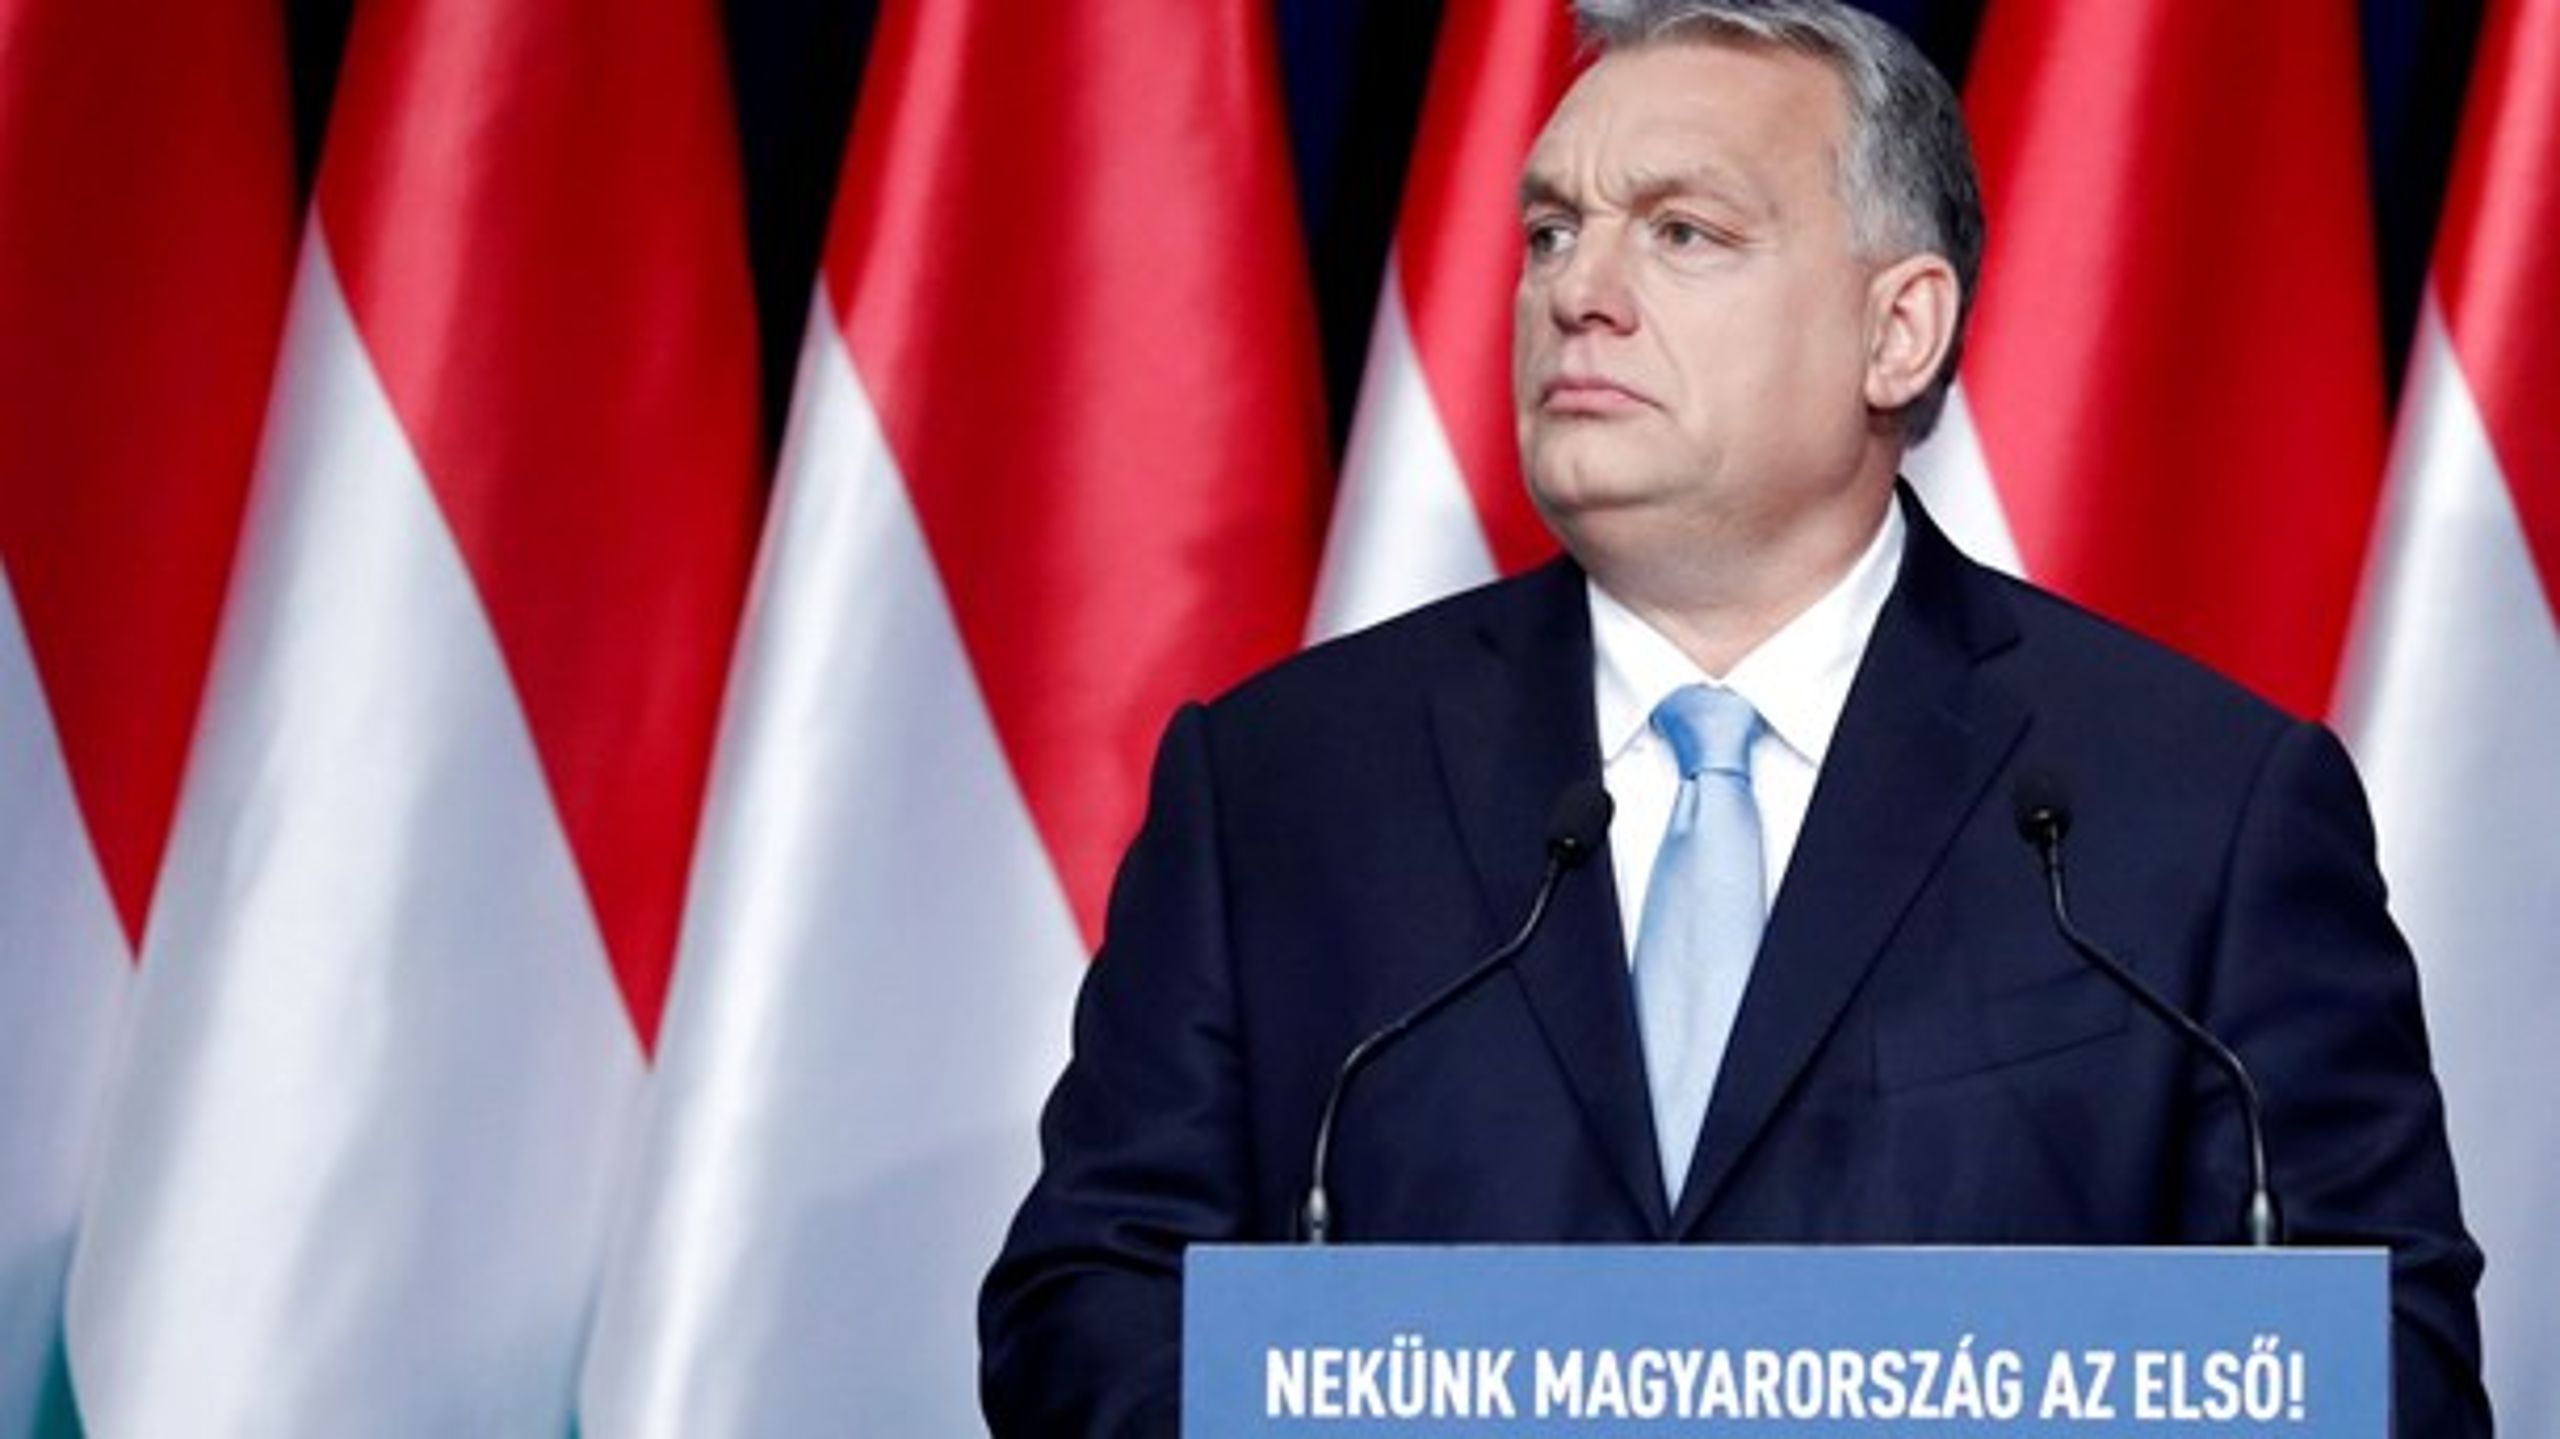 Den ungarske premierminister, Viktor Orbán, er en af de europæiske regeringsledere, der har fået kritik for at true retsstaten.&nbsp;